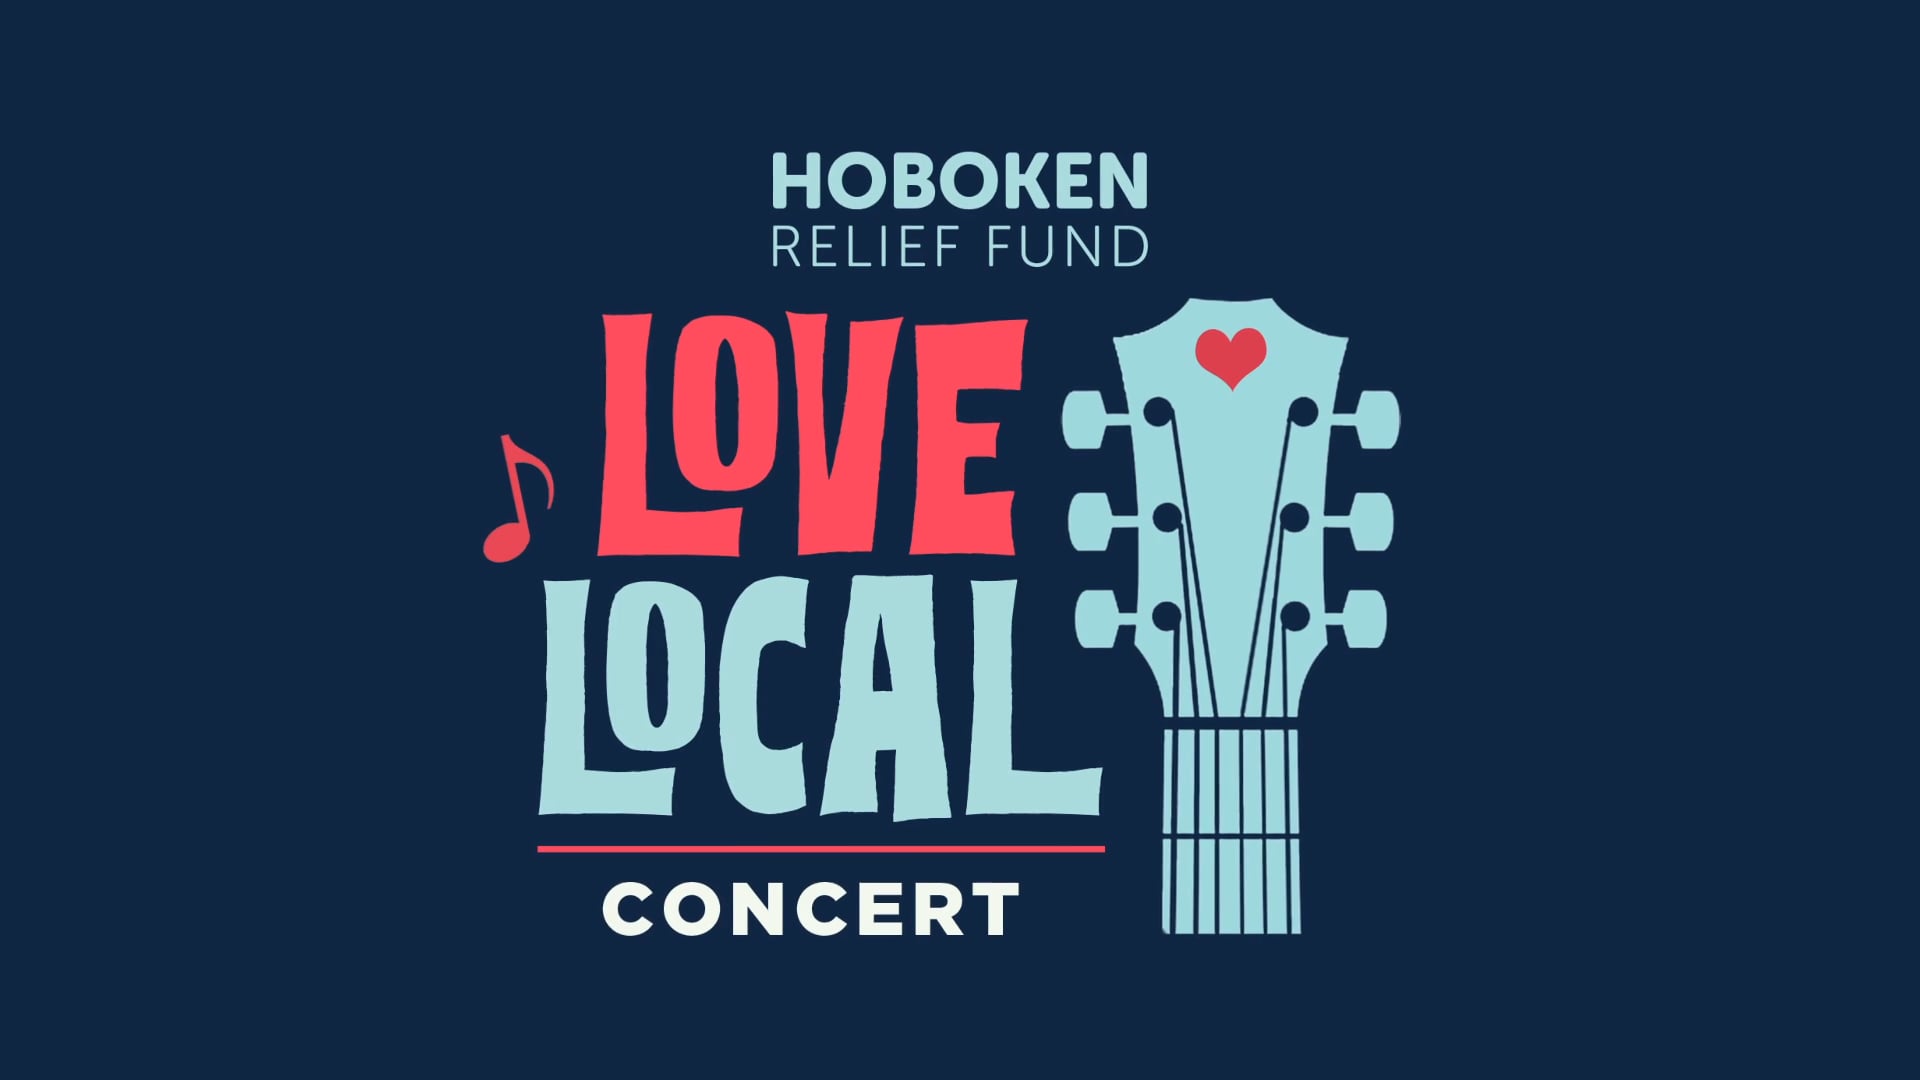 Hoboken Relief Fund - Love Local Concert